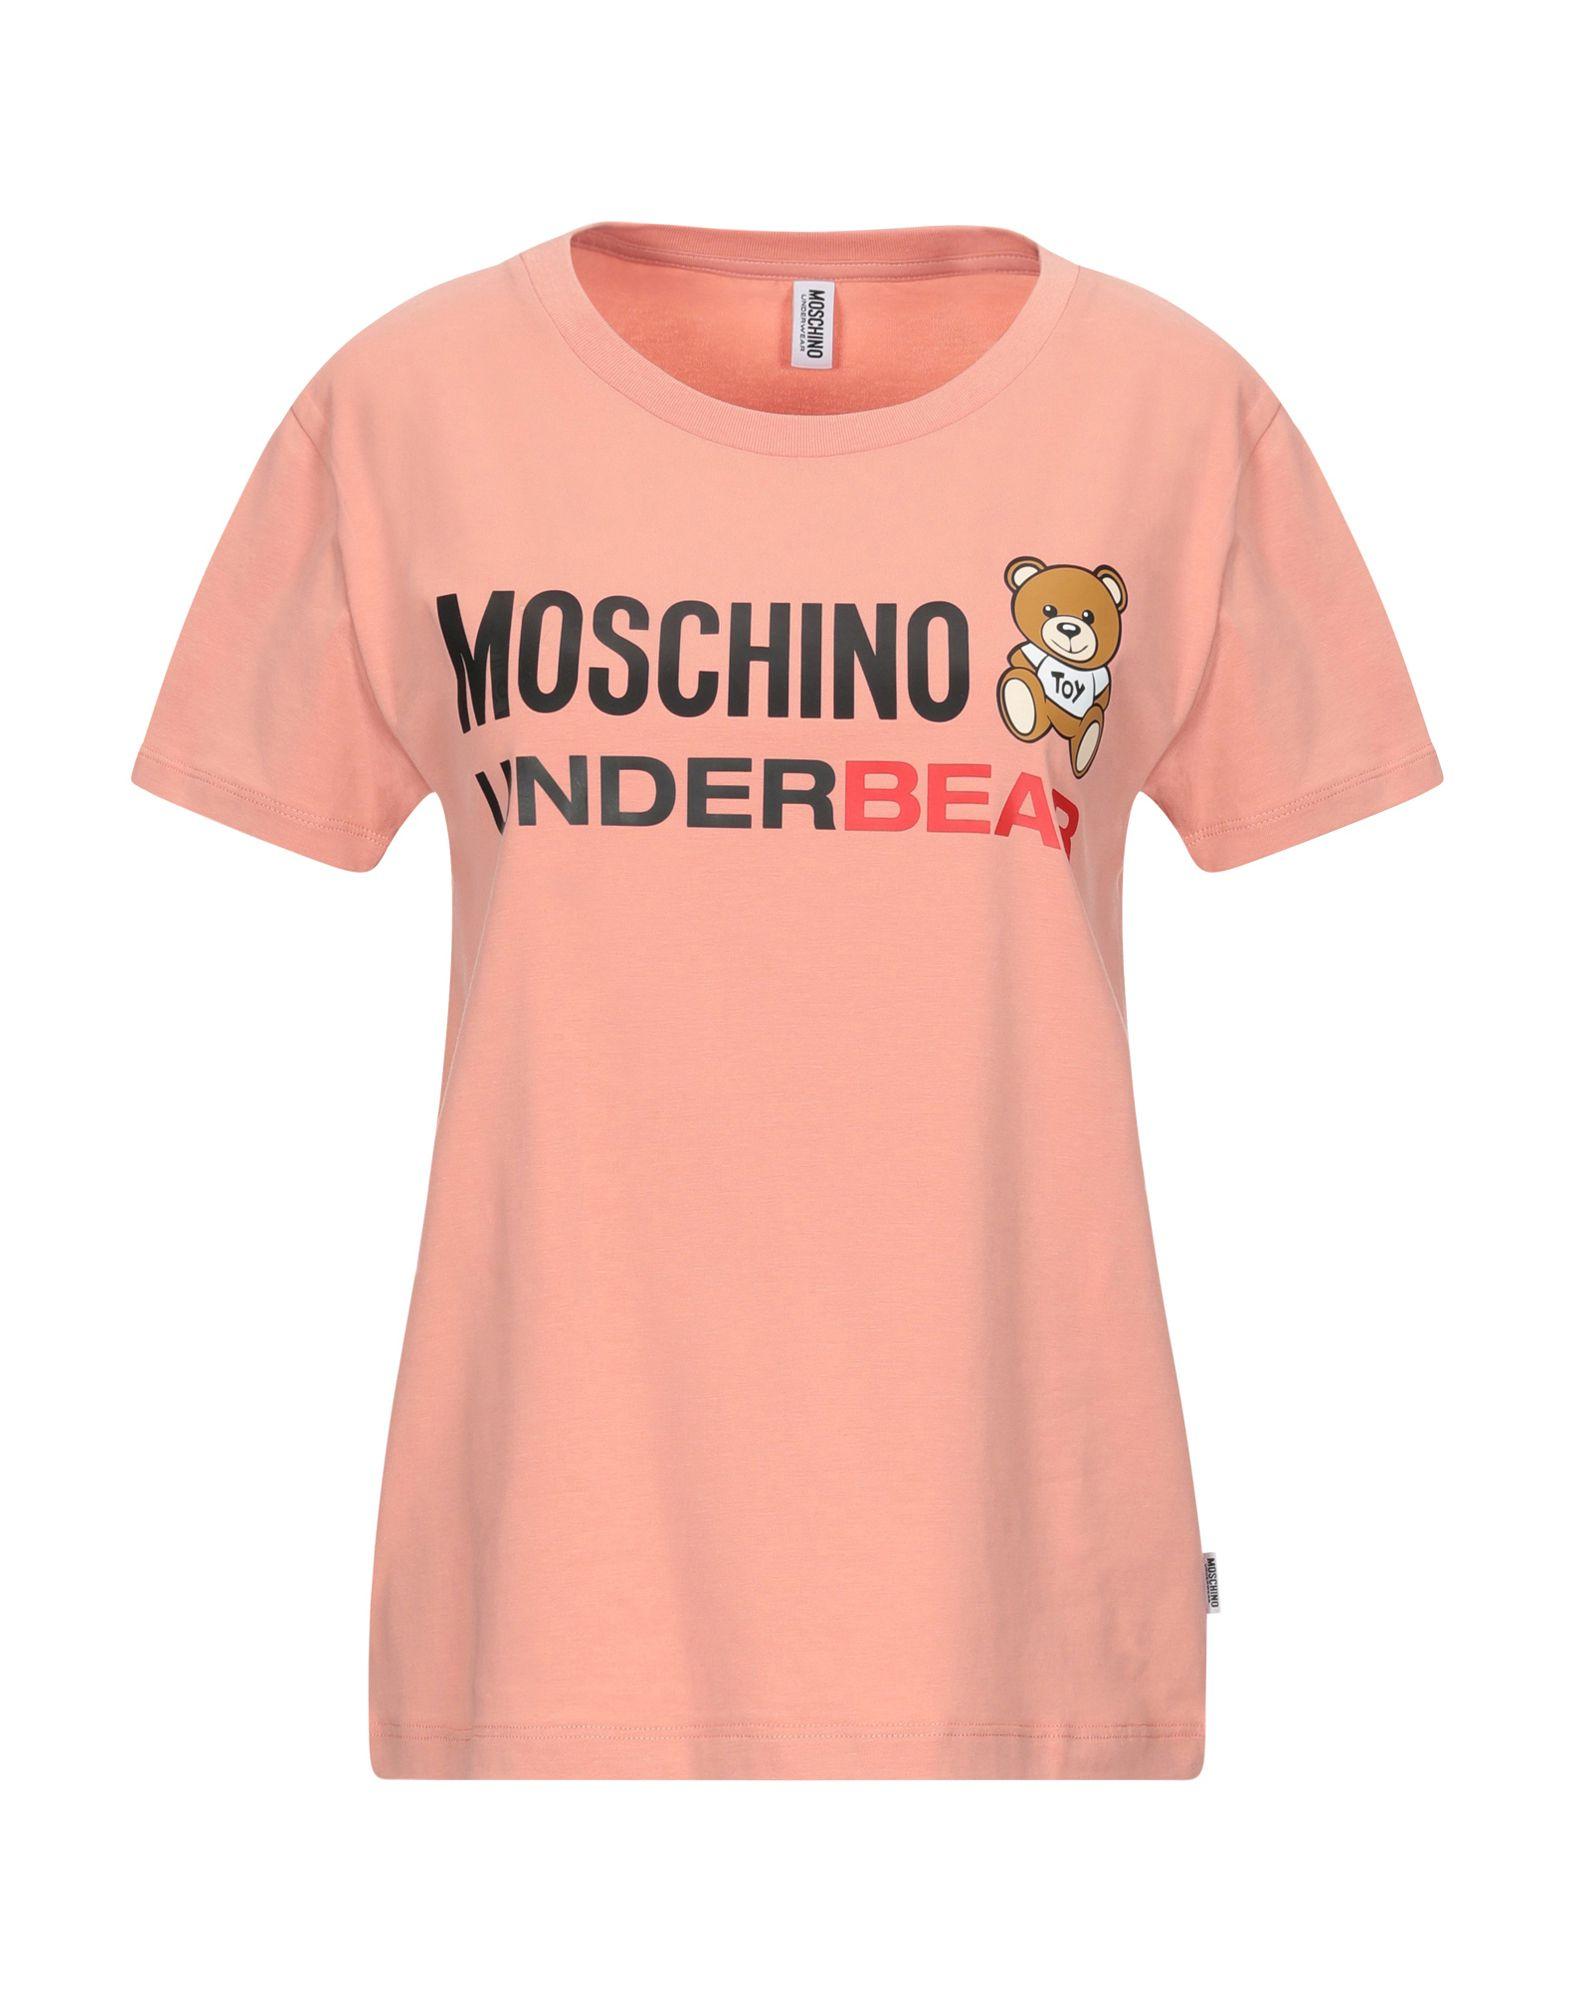 moschino undershirt